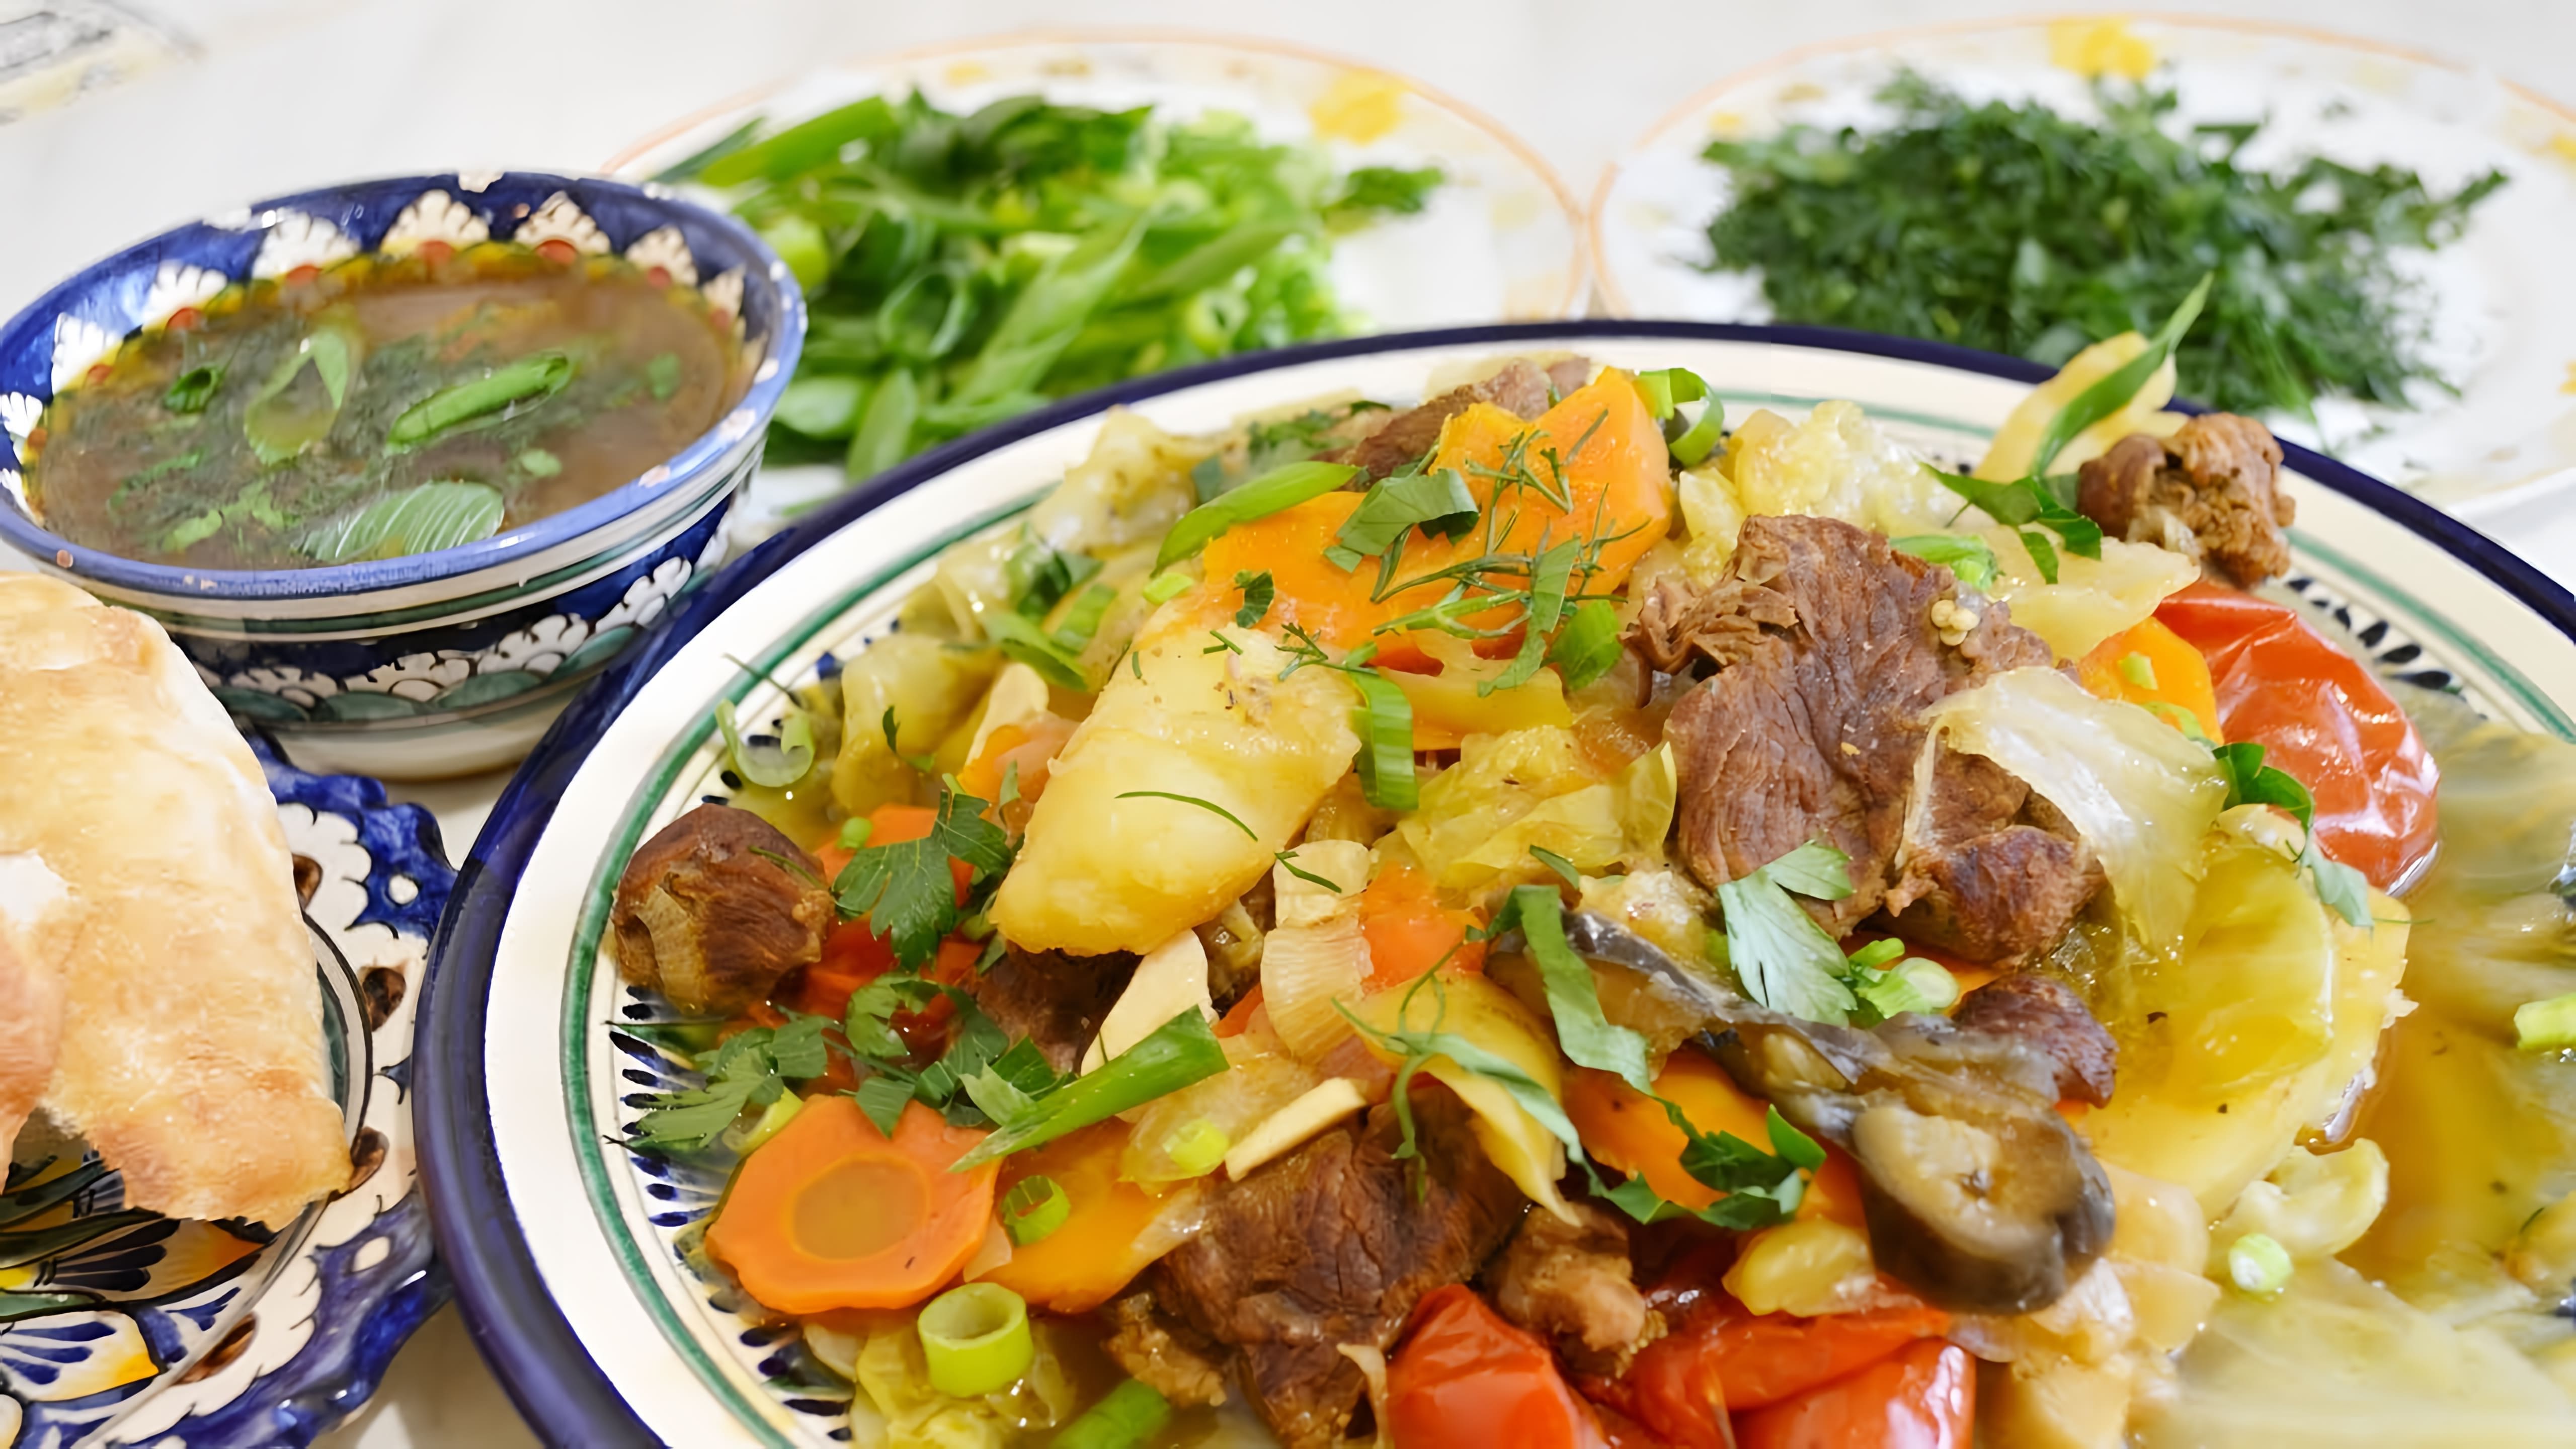 В этом видео представлен пошаговый рецепт приготовления блюда восточной кухни - думлямы